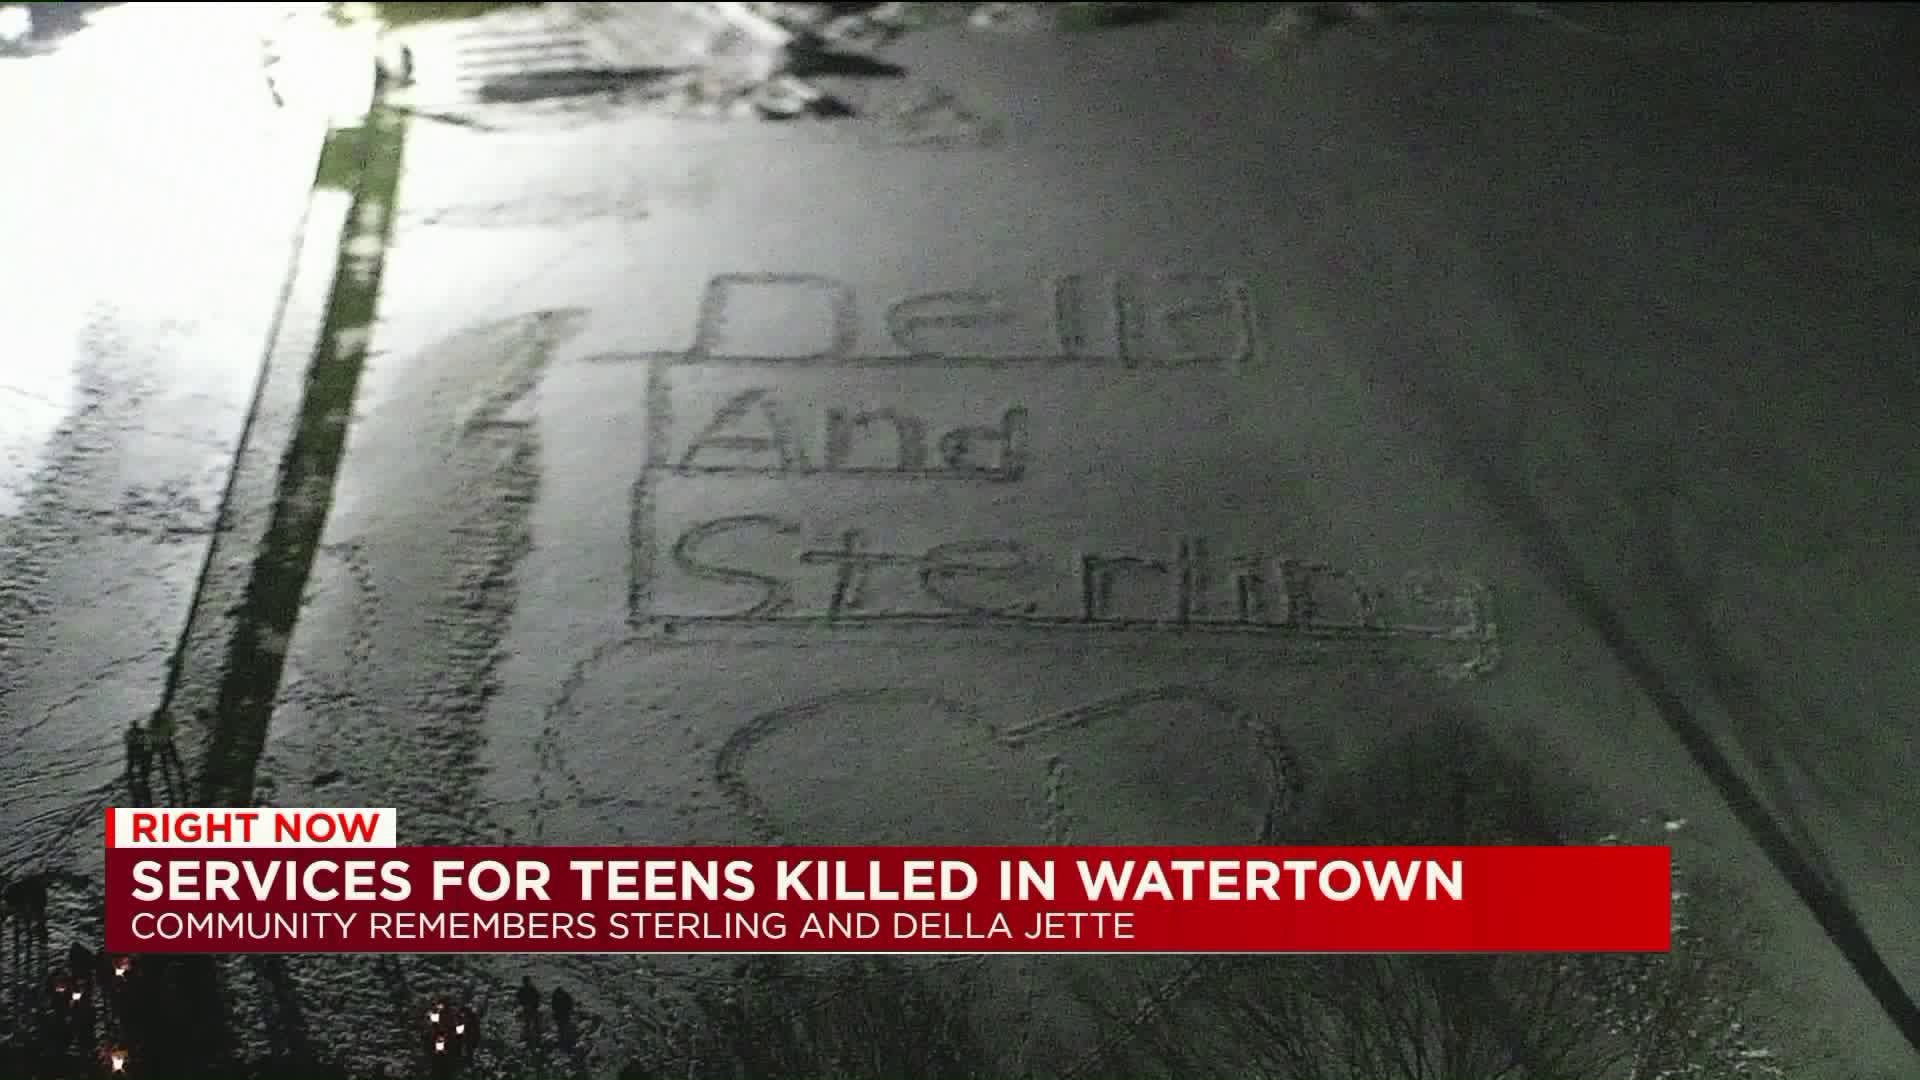 Calling hours held for Watertown teens